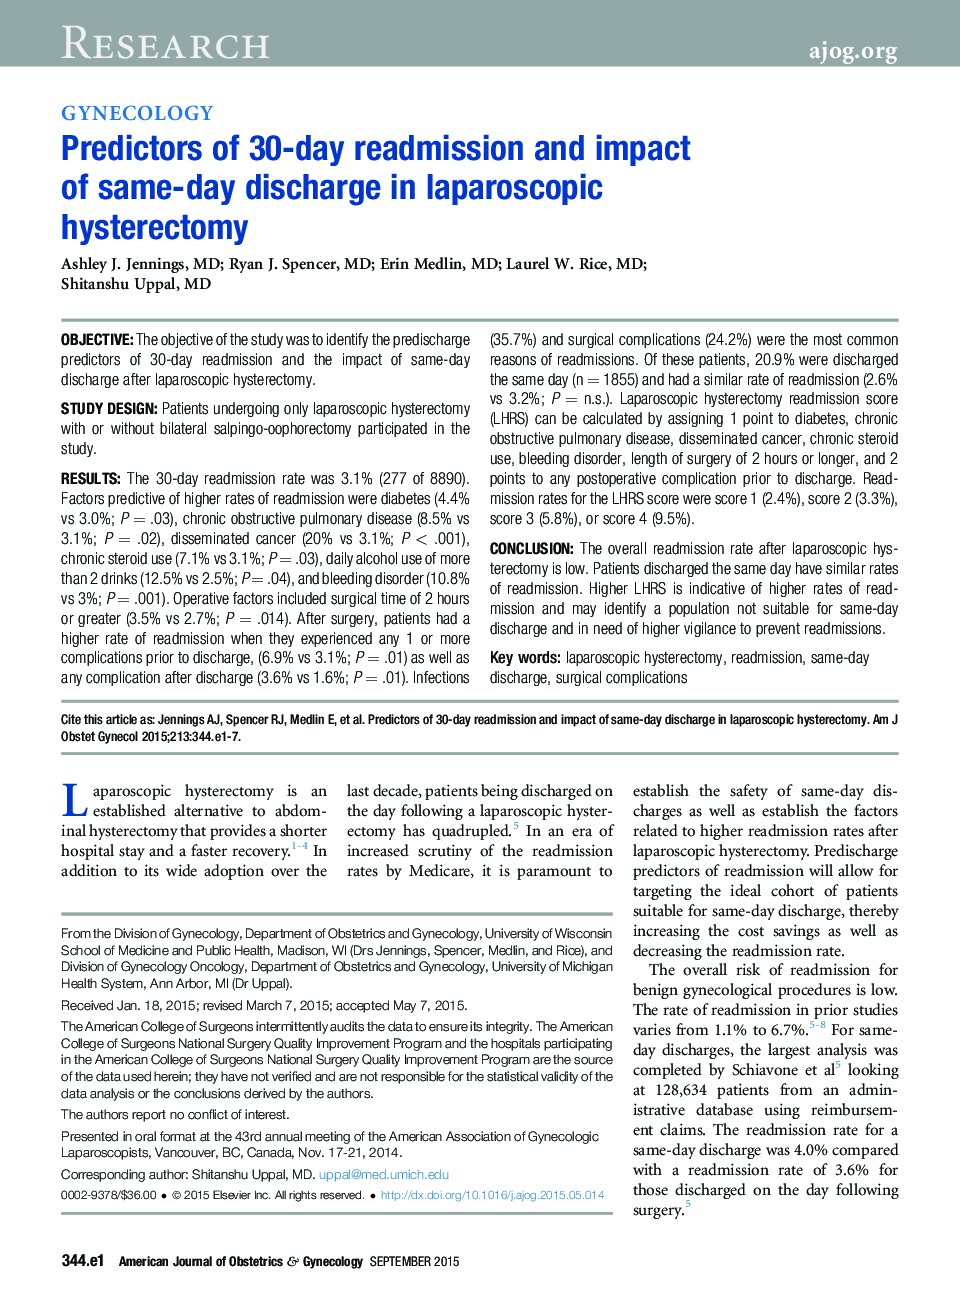 پیش بینی های پذیرش 30 روزه و تأثیر تخلیه در روز در هیسترکتومی لاپاروسکوپی 